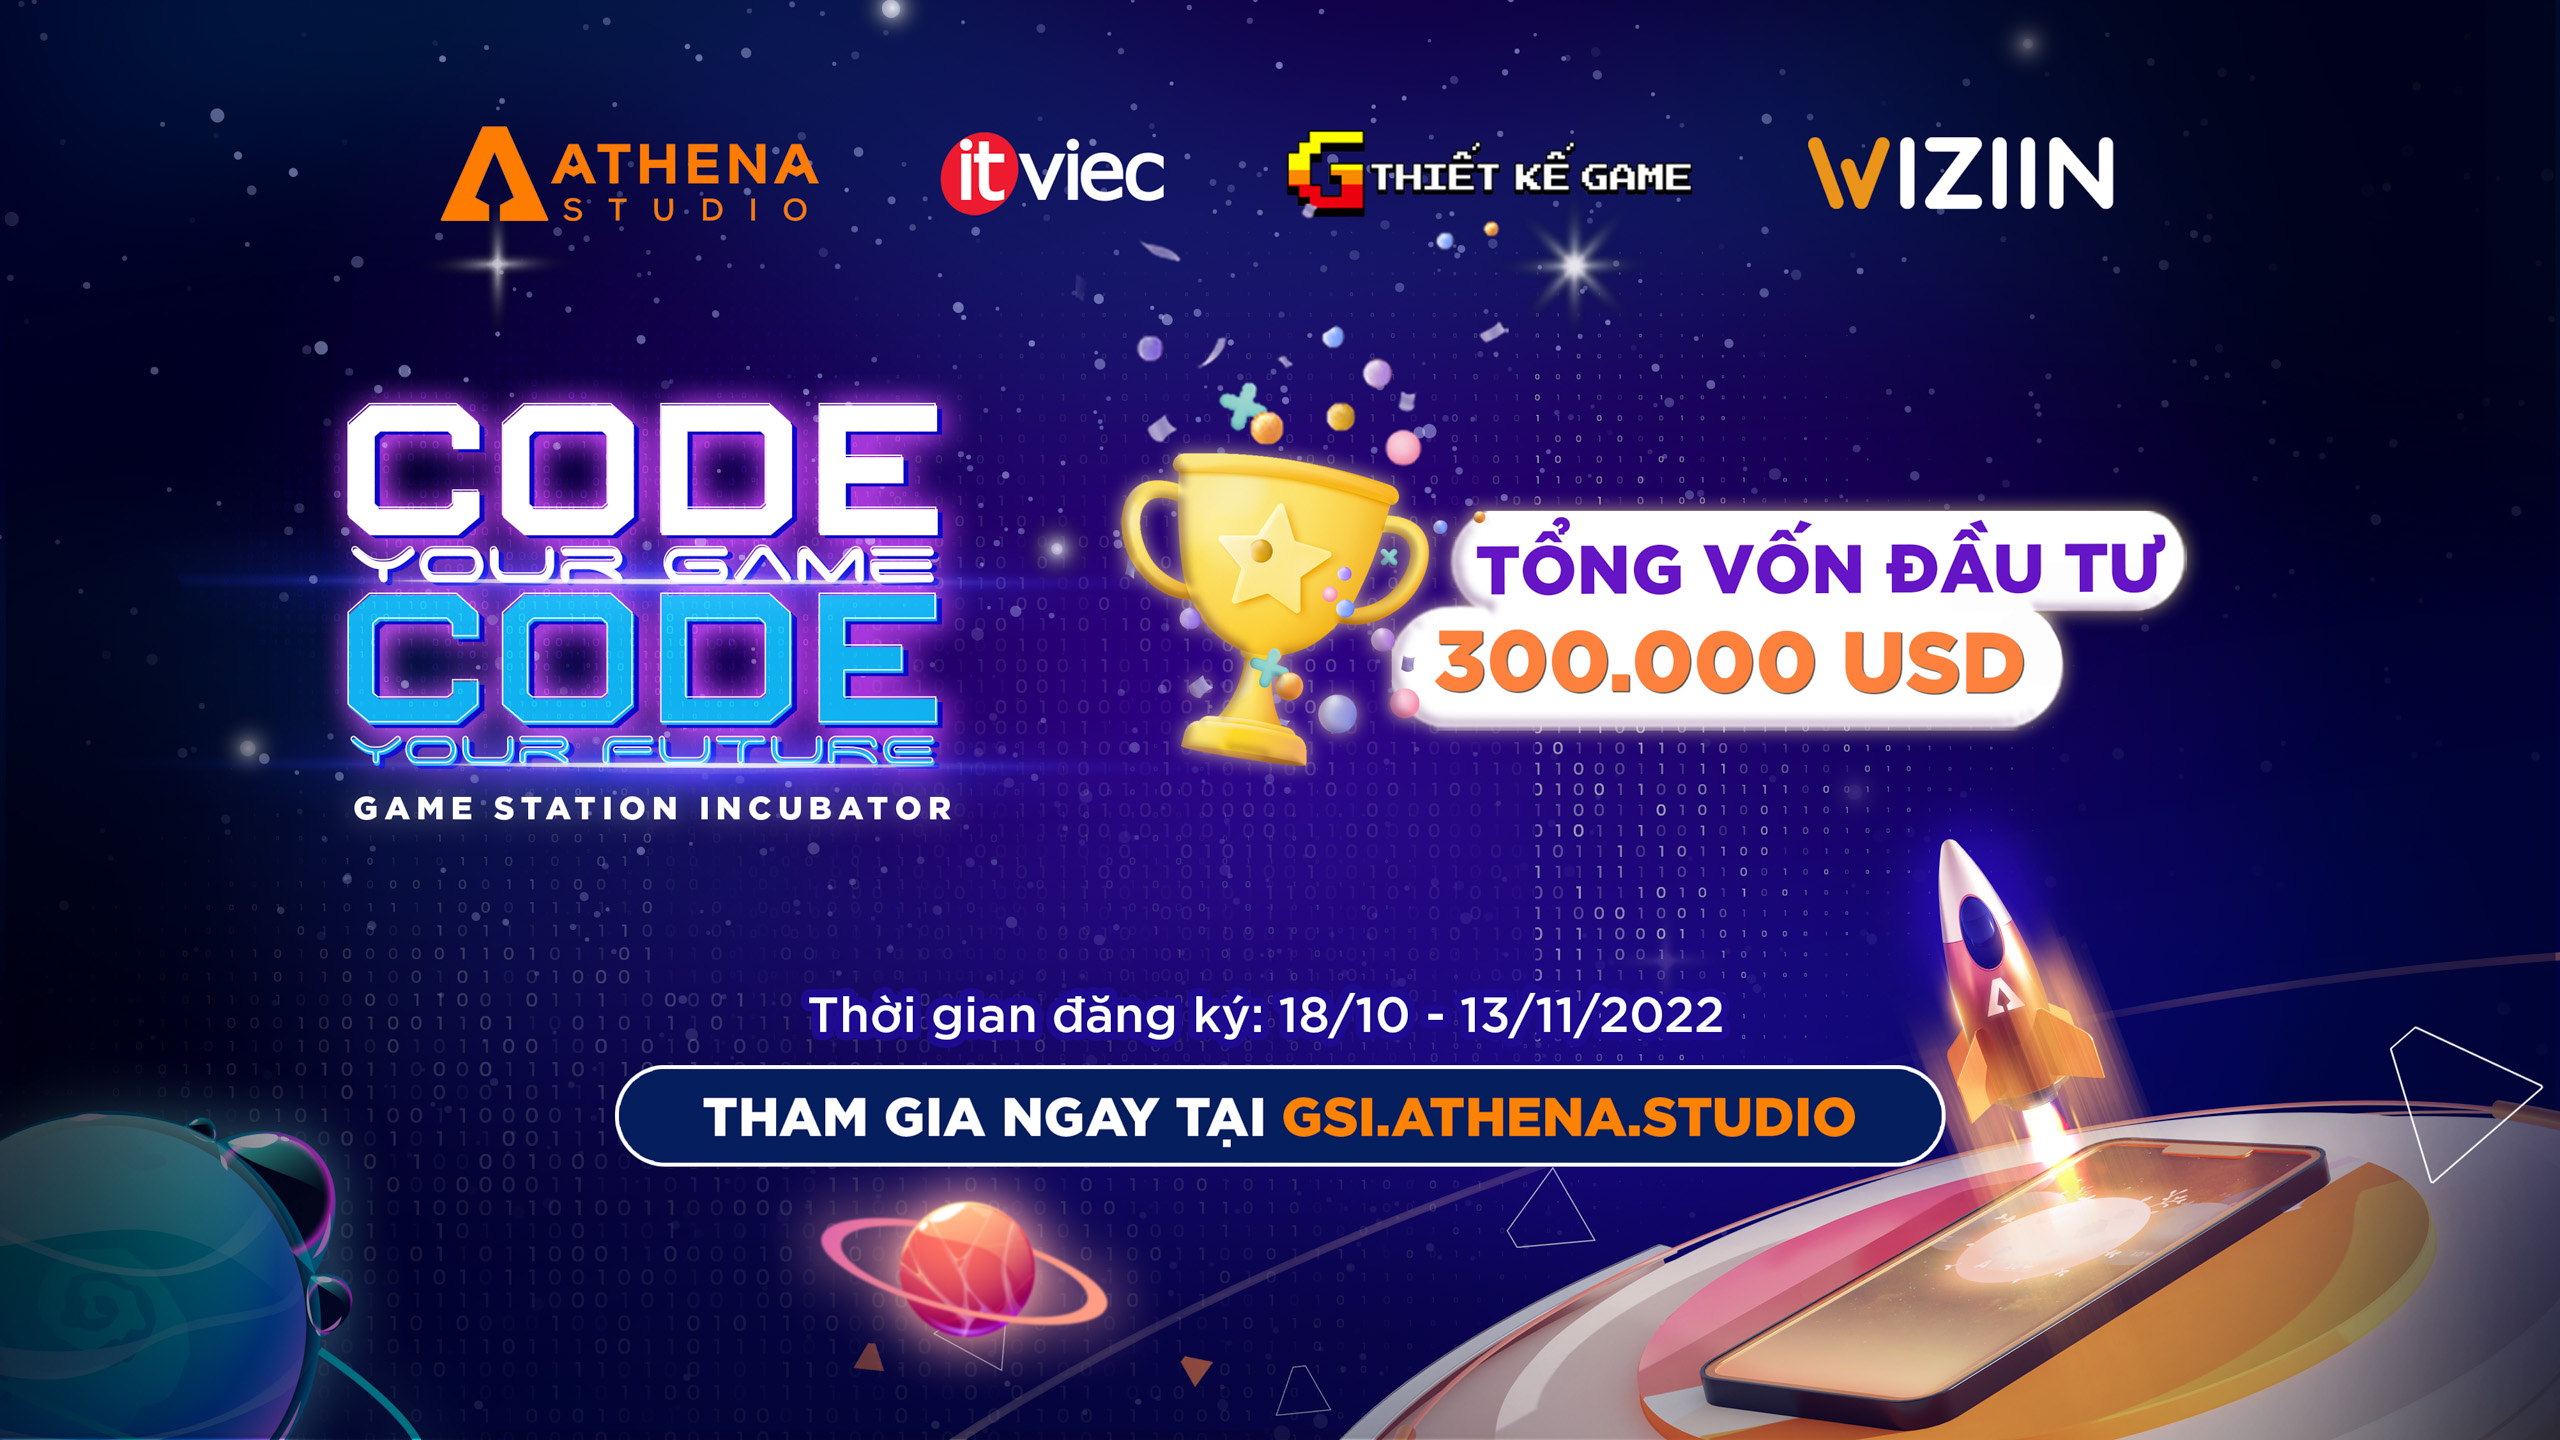 Game Station Incubator 2022 - Sân chơi dành cho những nhà phát triển game Indie tại Việt Nam